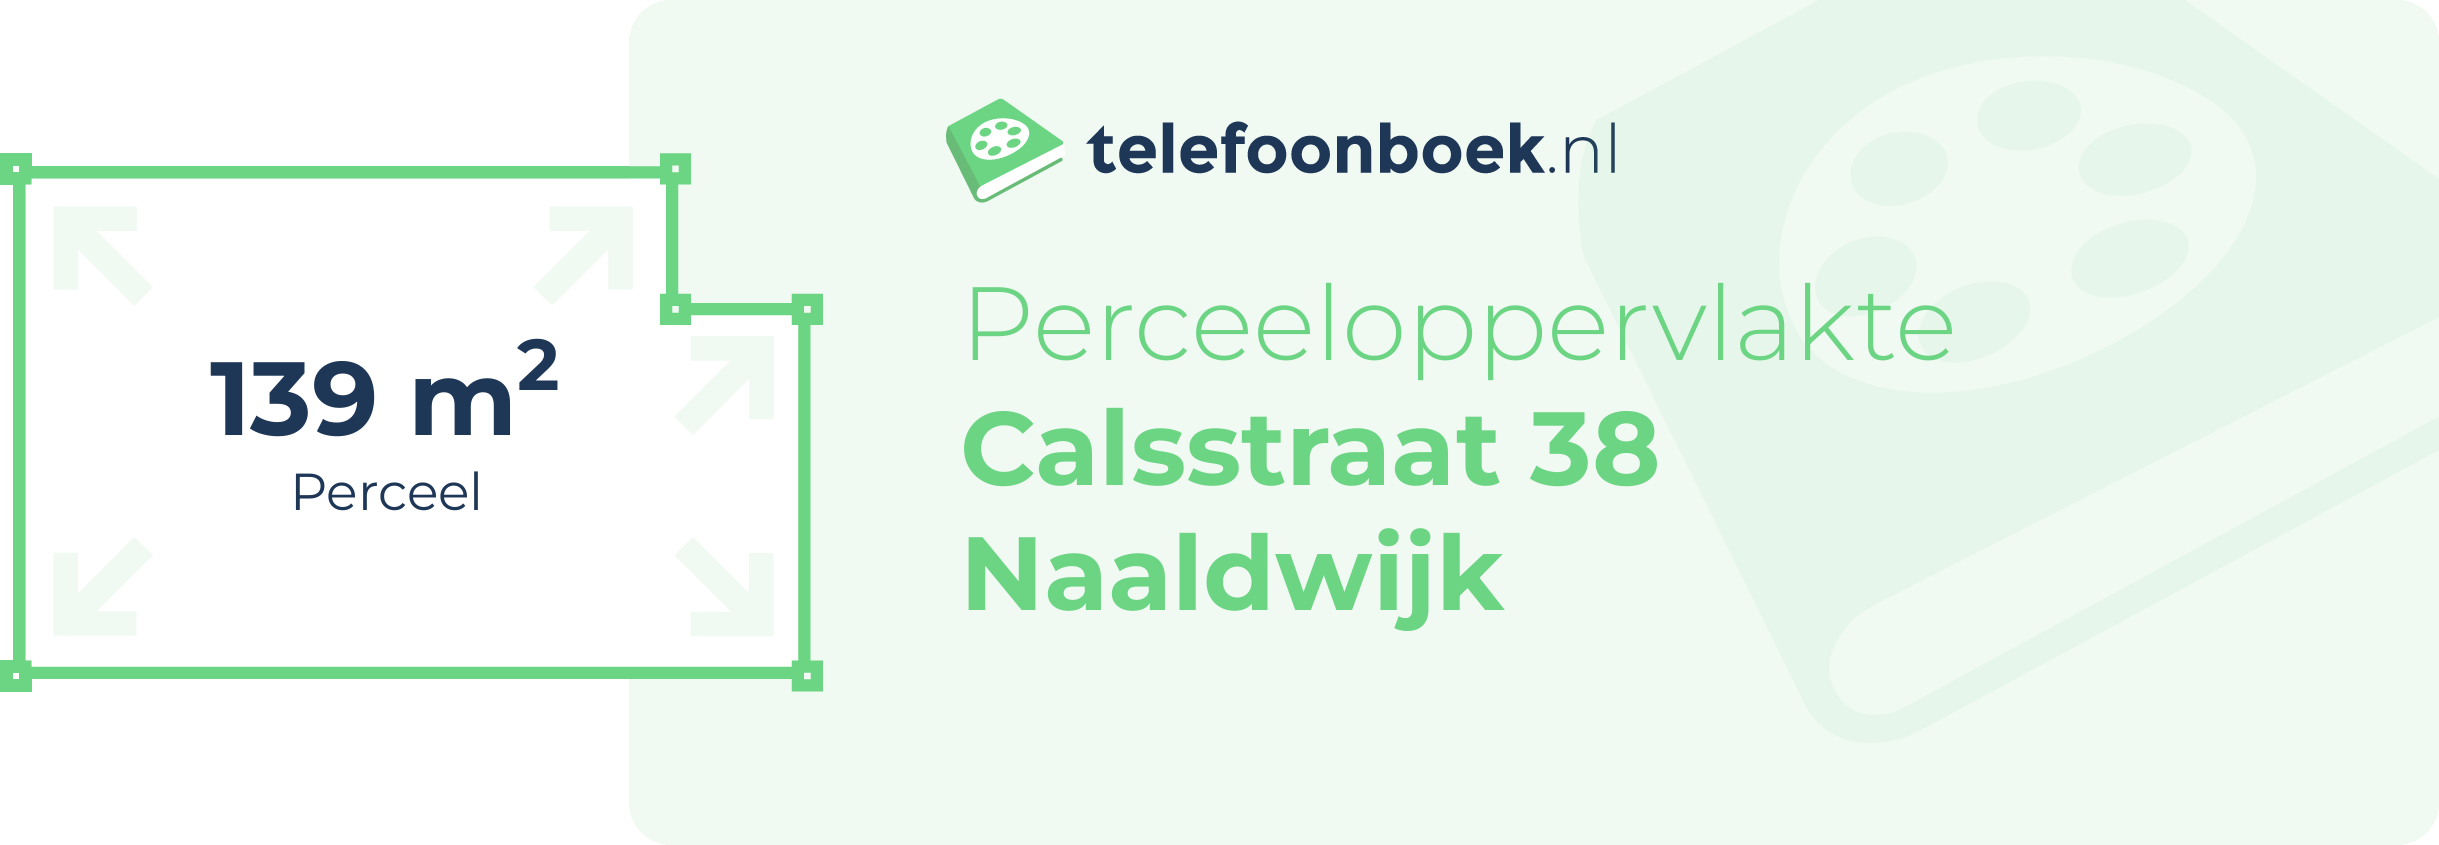 Perceeloppervlakte Calsstraat 38 Naaldwijk